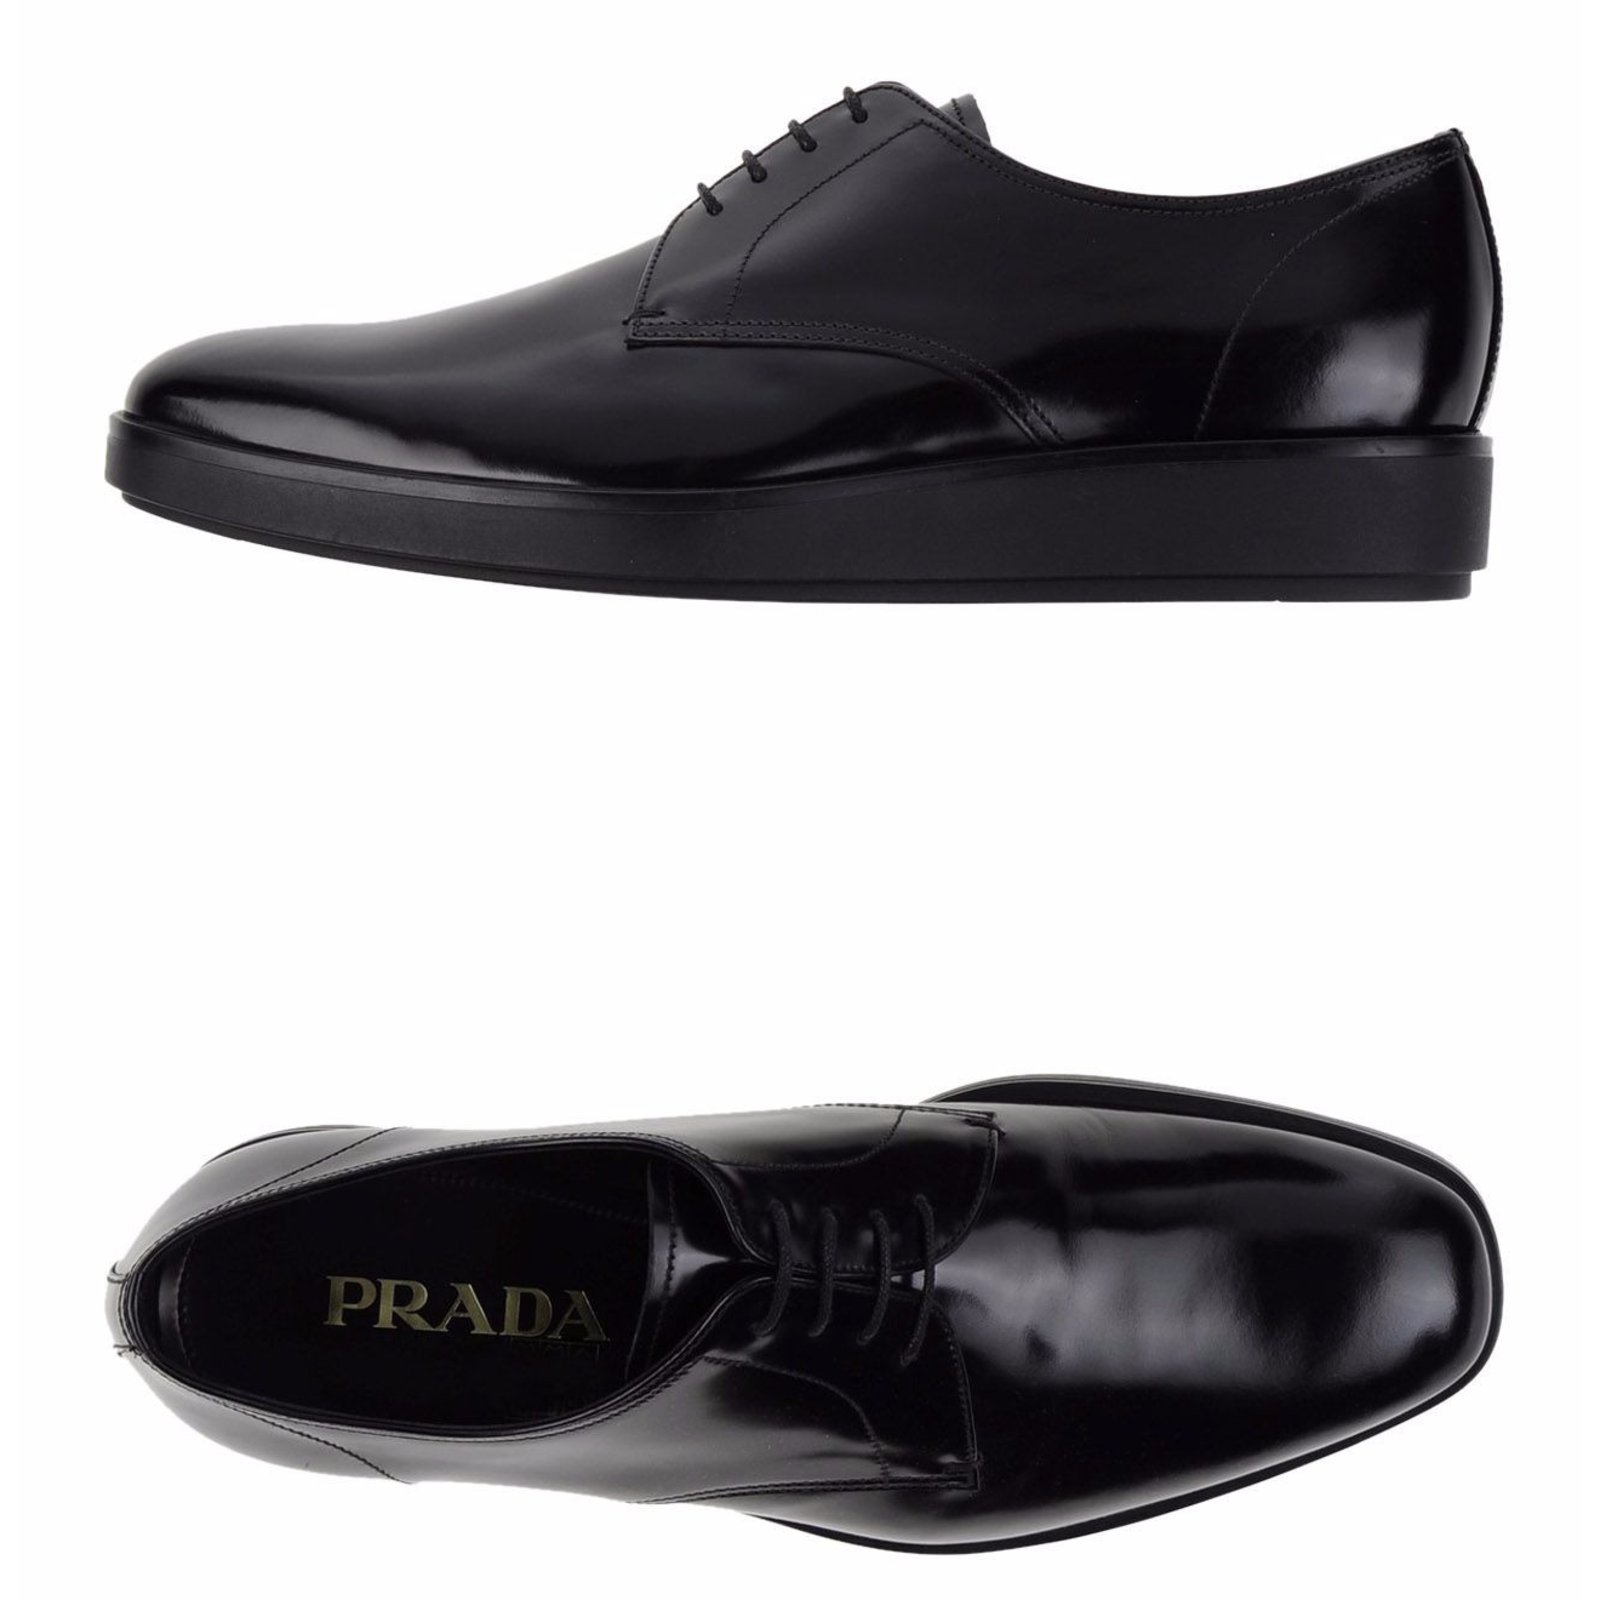 prada men's lace up shoes